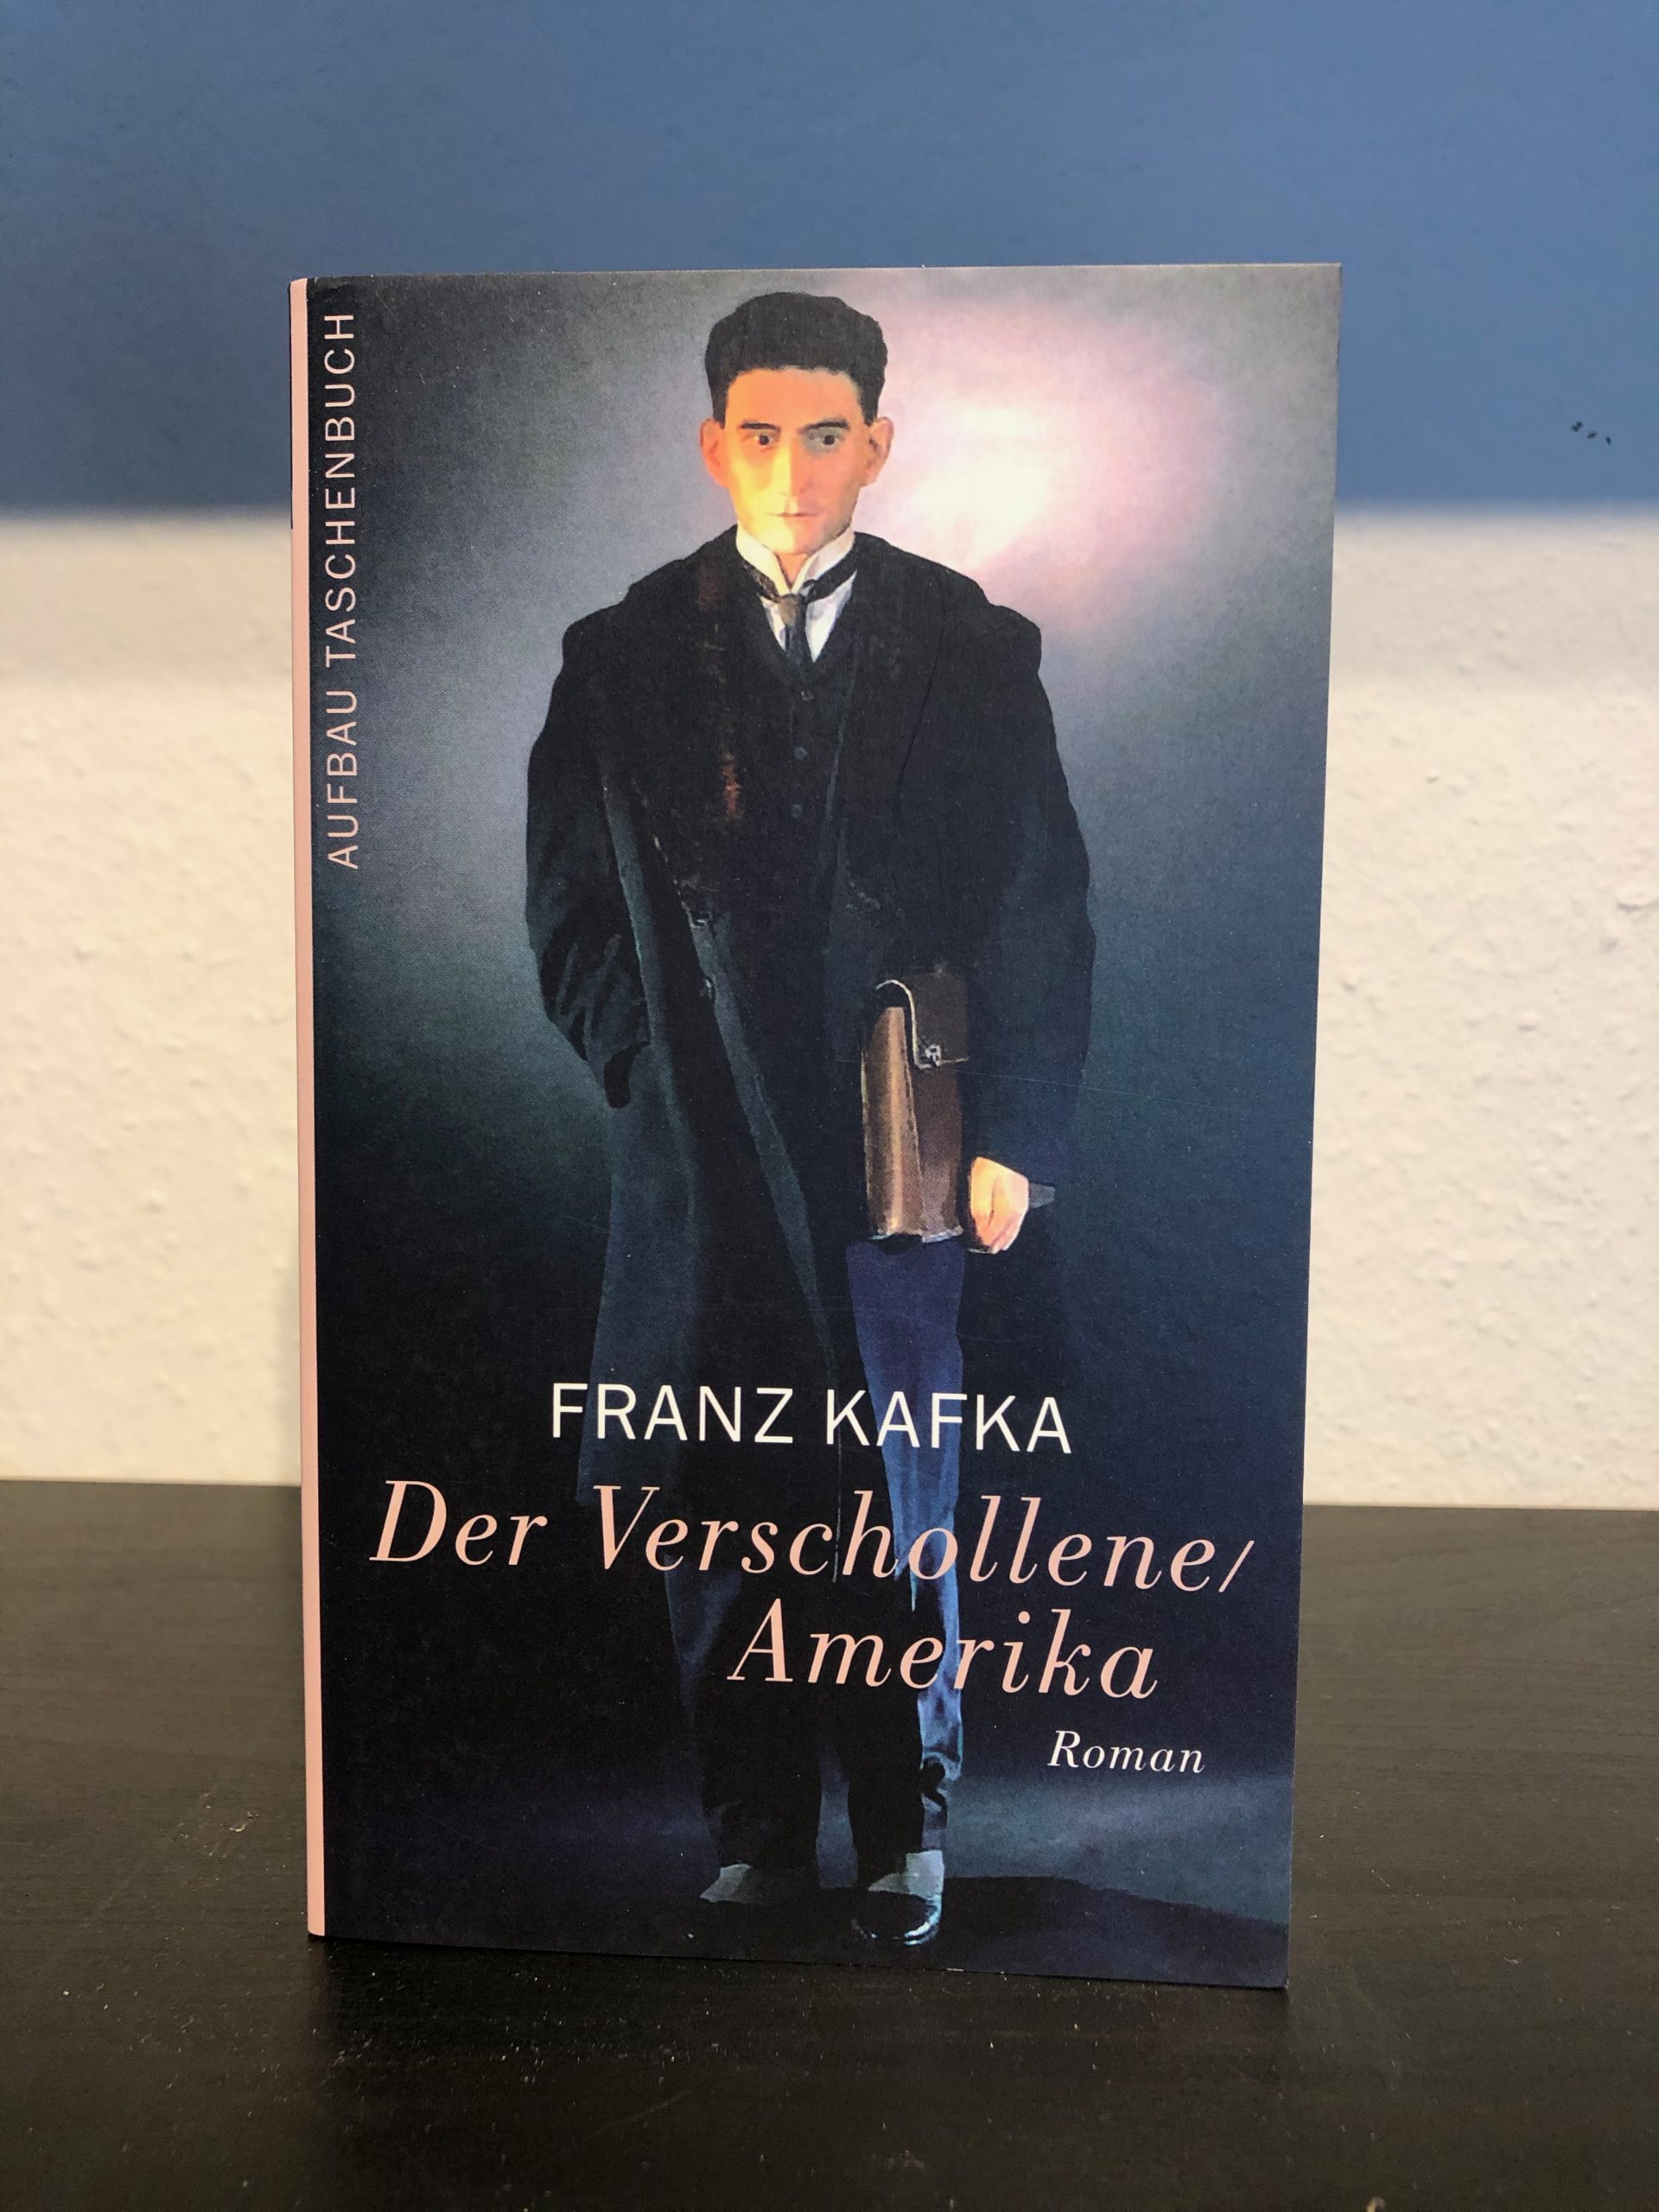 Der Verschollene/Amerika - Franz Kafka main image